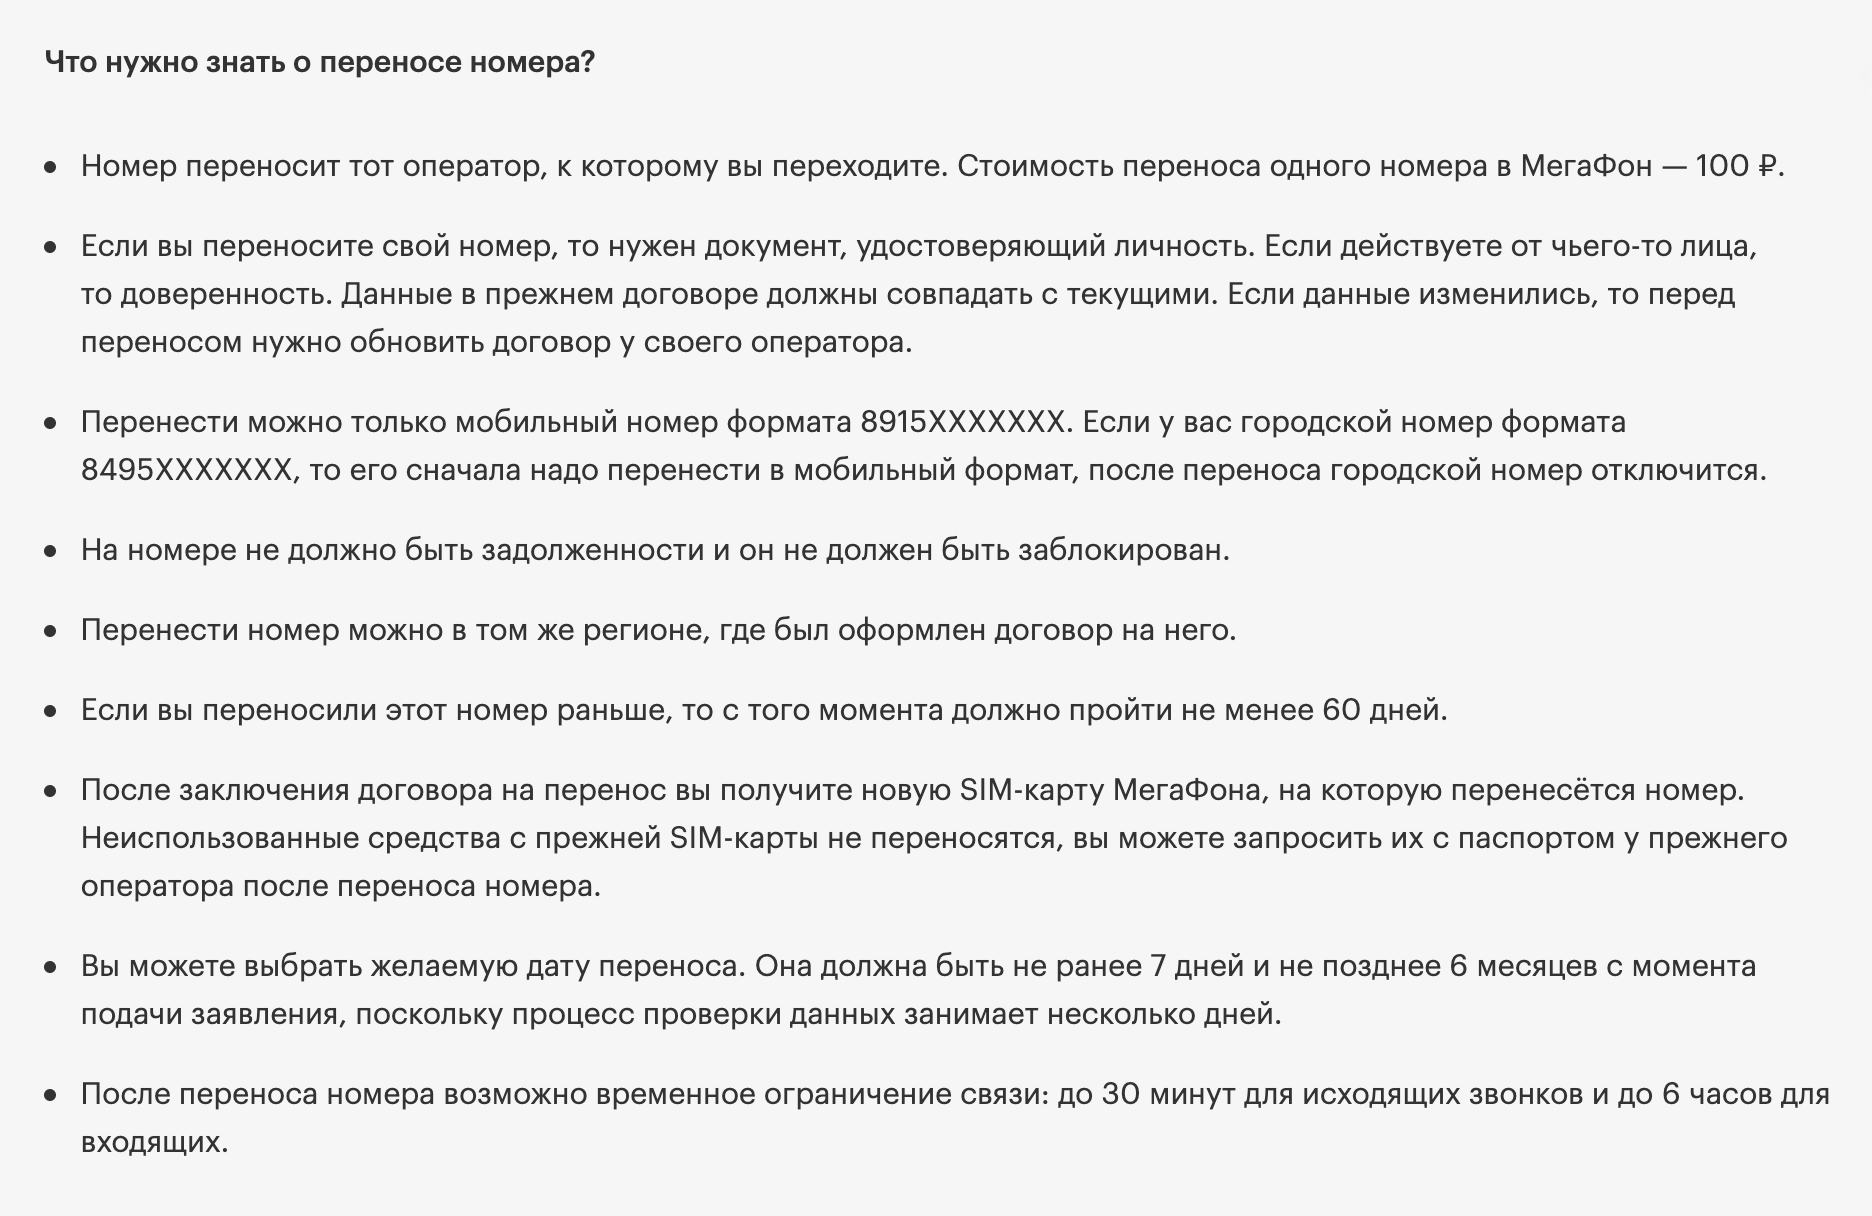 И у «Мегафона» платный переход — 100 ₽. Источник: megafon.ru